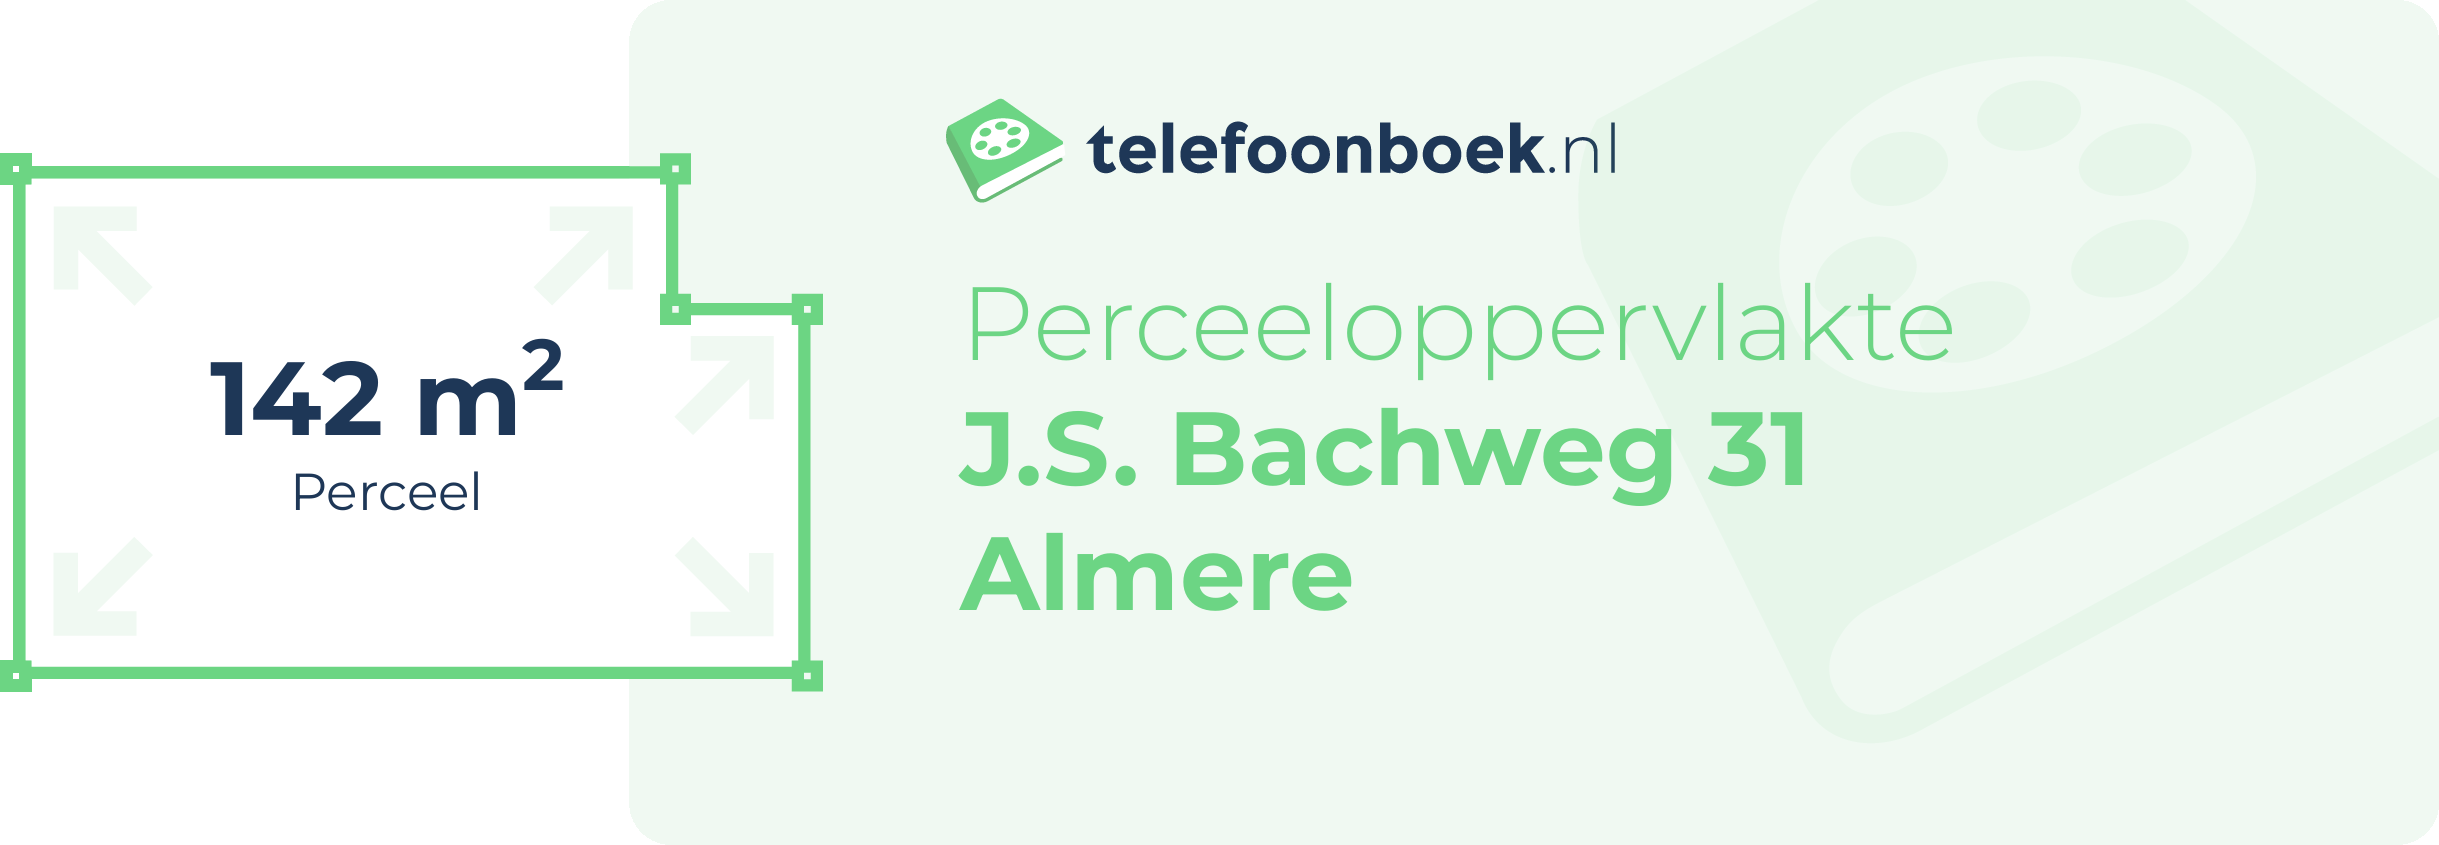 Perceeloppervlakte J.S. Bachweg 31 Almere